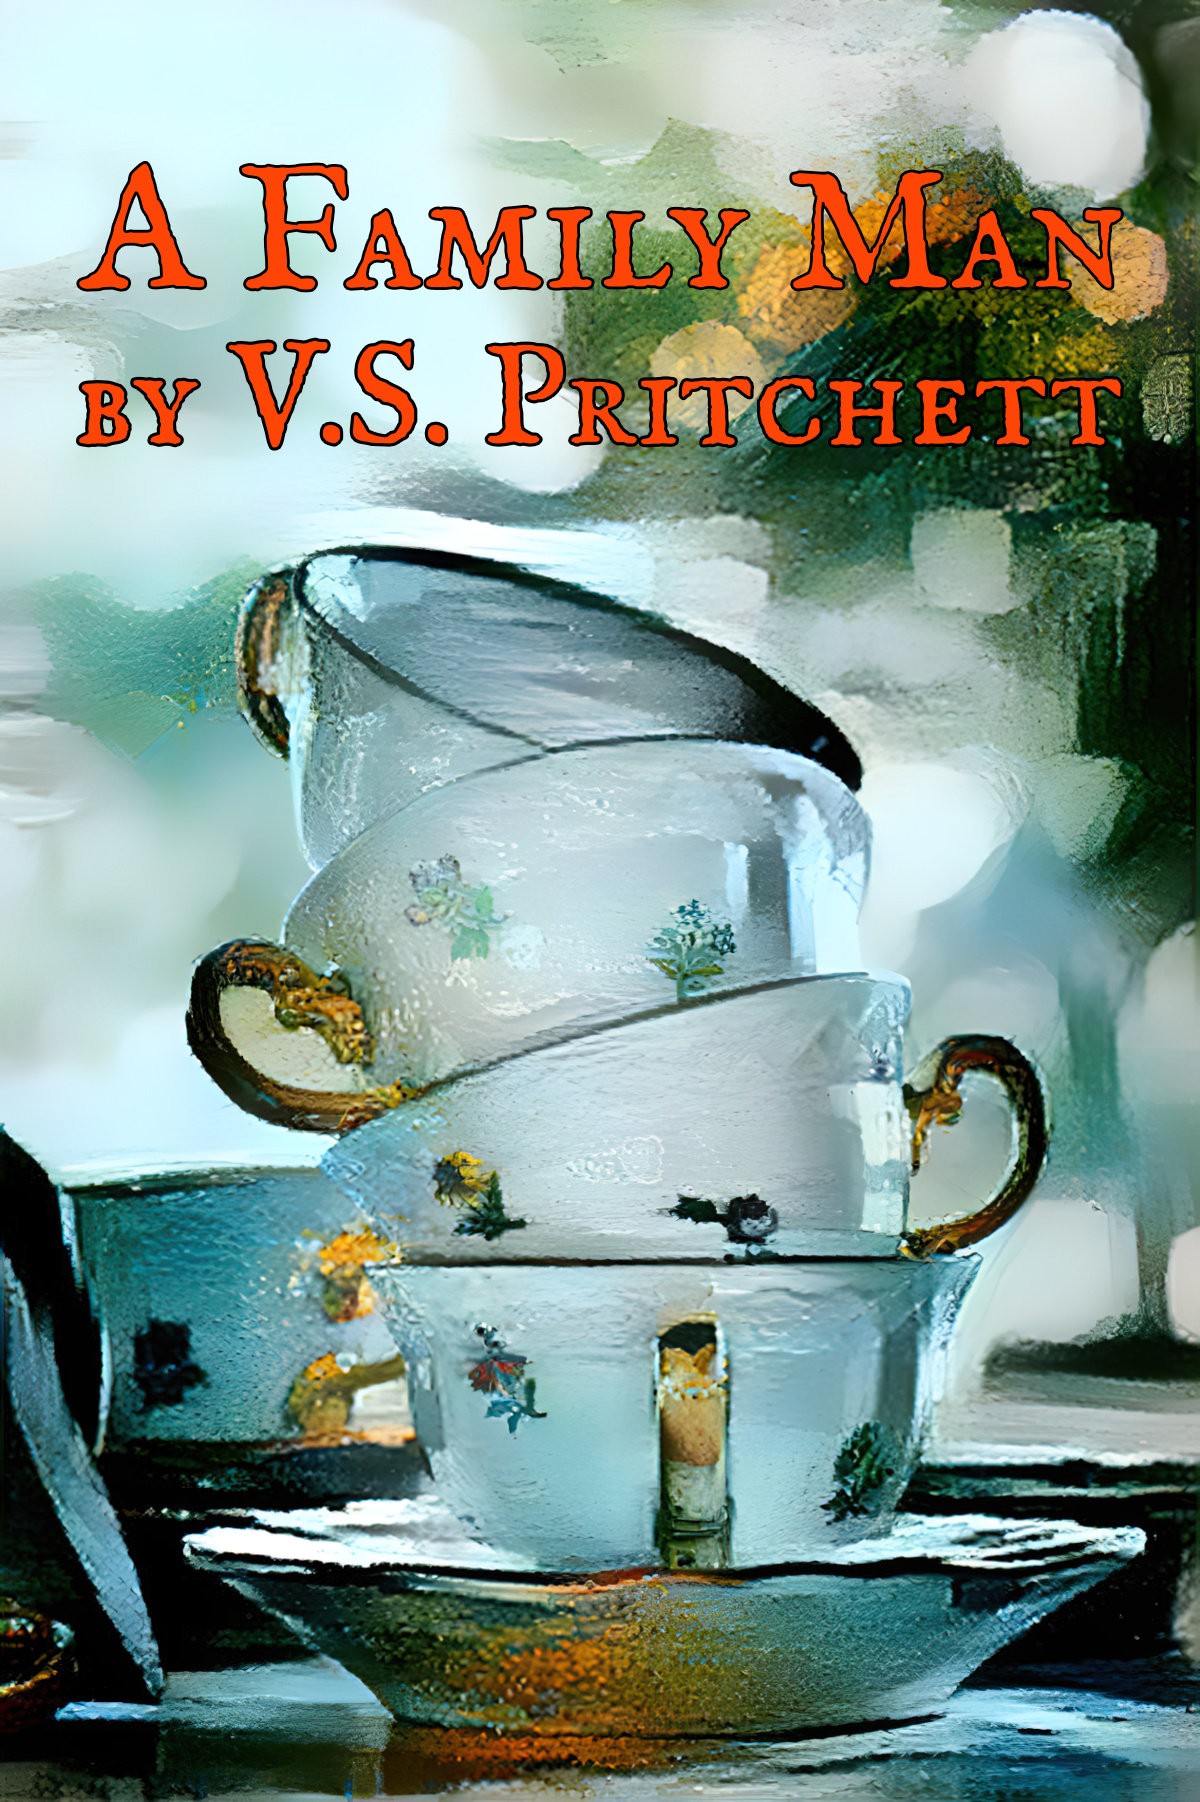 A Family Man by V.S. Pritchett Short Story Analysis